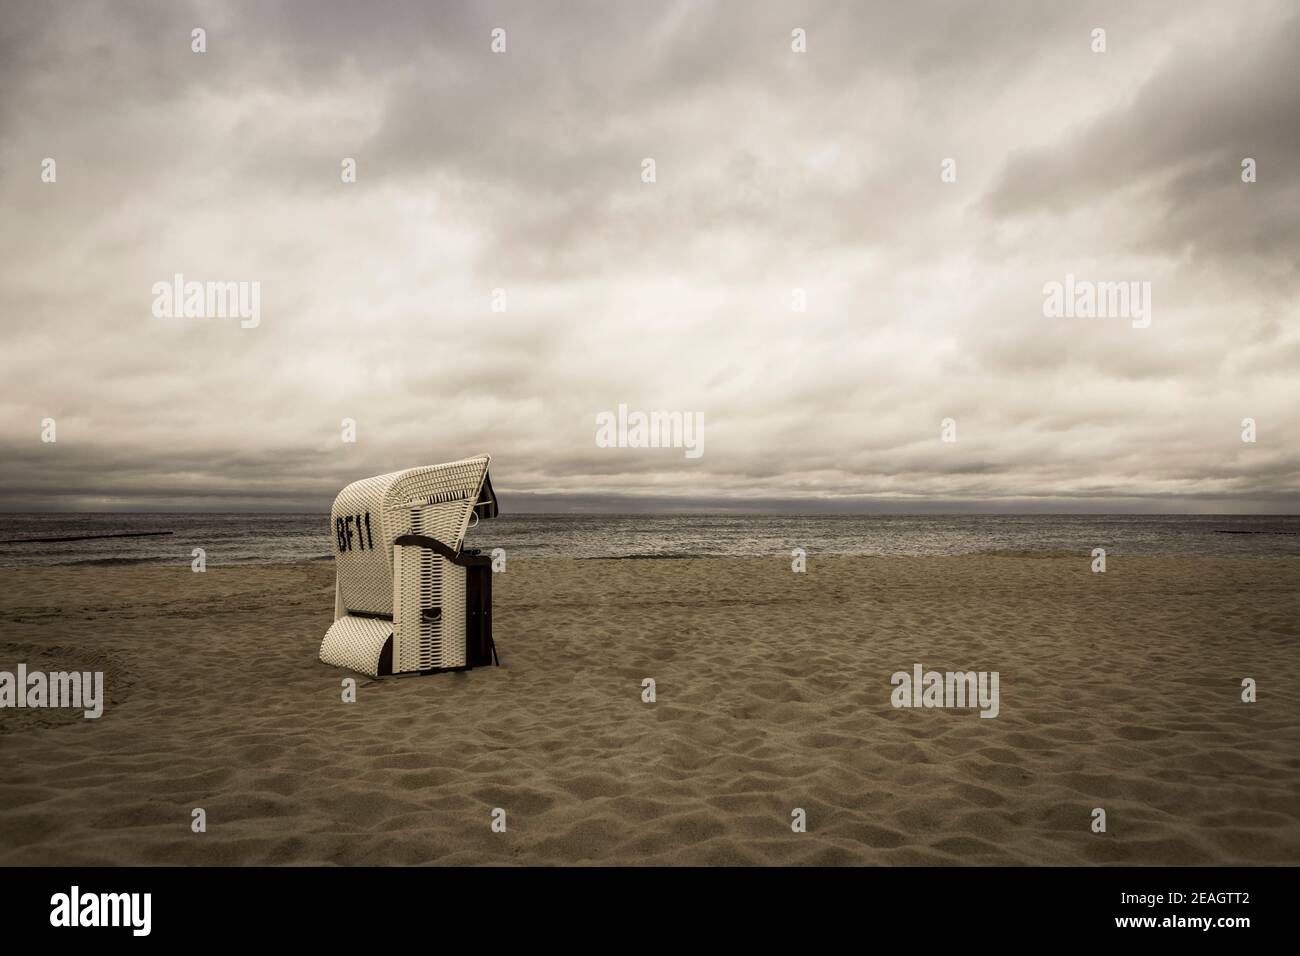 Nostalgia di vacanza e ricordi lontani Concept shot di una spiaggia scena con una sedia da spiaggia in vimini e cielo drammatico dentro seppia Foto Stock